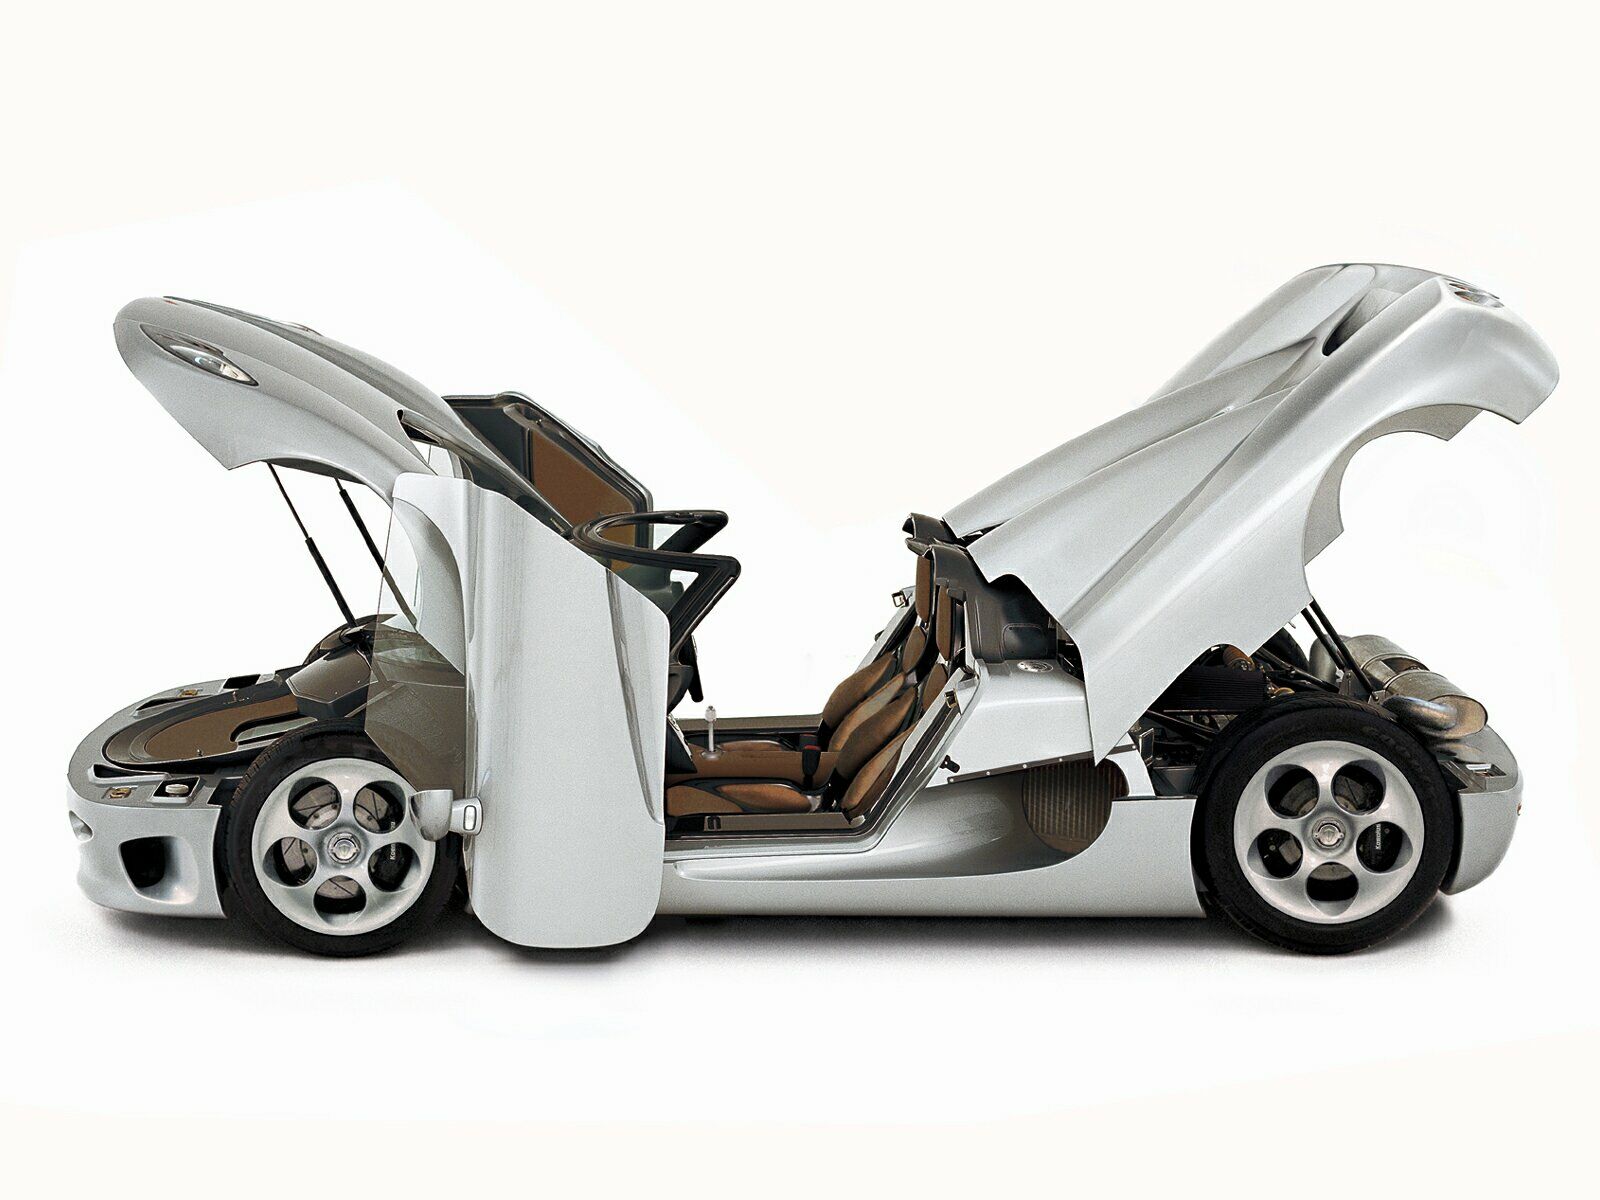 А здесь Koenigsegg демонстрирует свое главное преимущество перед остальными суперкарами — полную свободу в настройках большинства узлов: жесткости и высоты подвески, клиренса и распределения тормозной силы